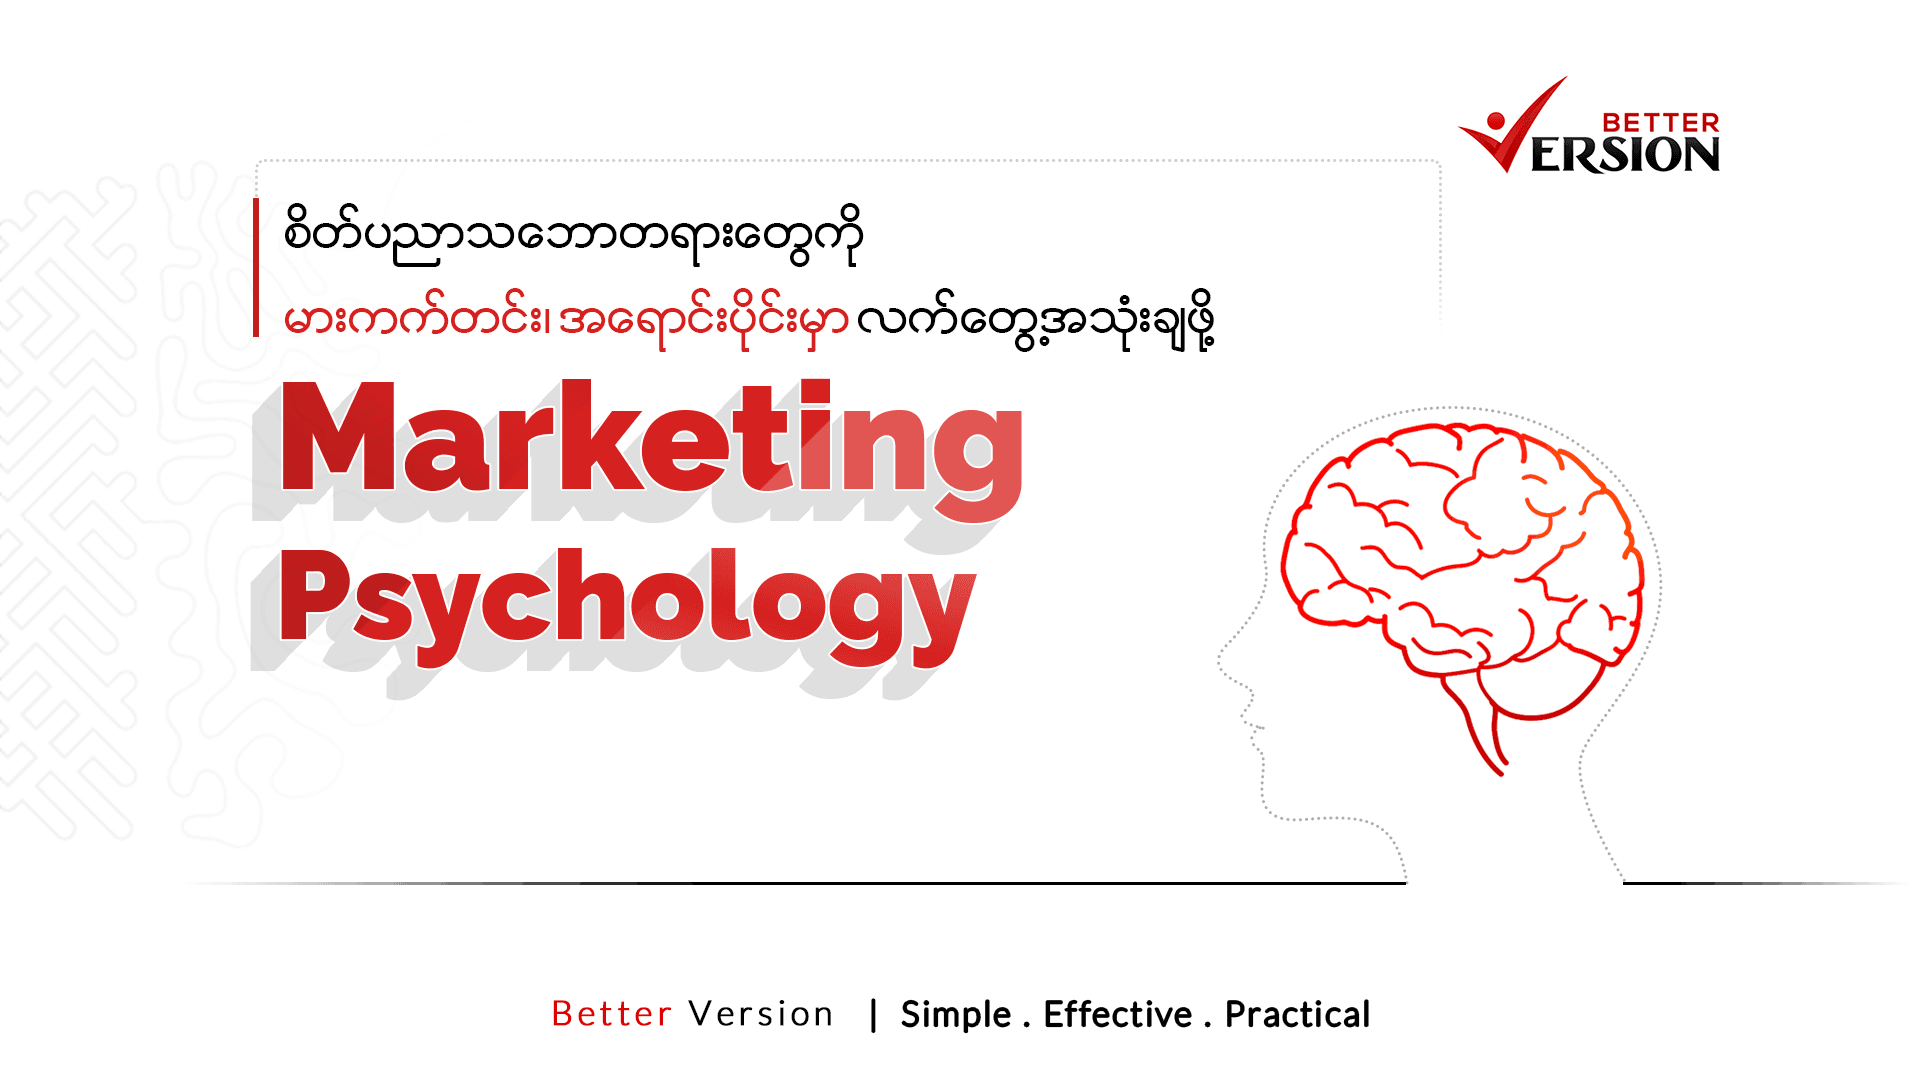 Marketing Psychology: (စိတ်ပညာကို မားကက်တင်း နဲ့ အရောင်းပိုင်းမှာ လက်တွေ့အသုံးချခြင်း)